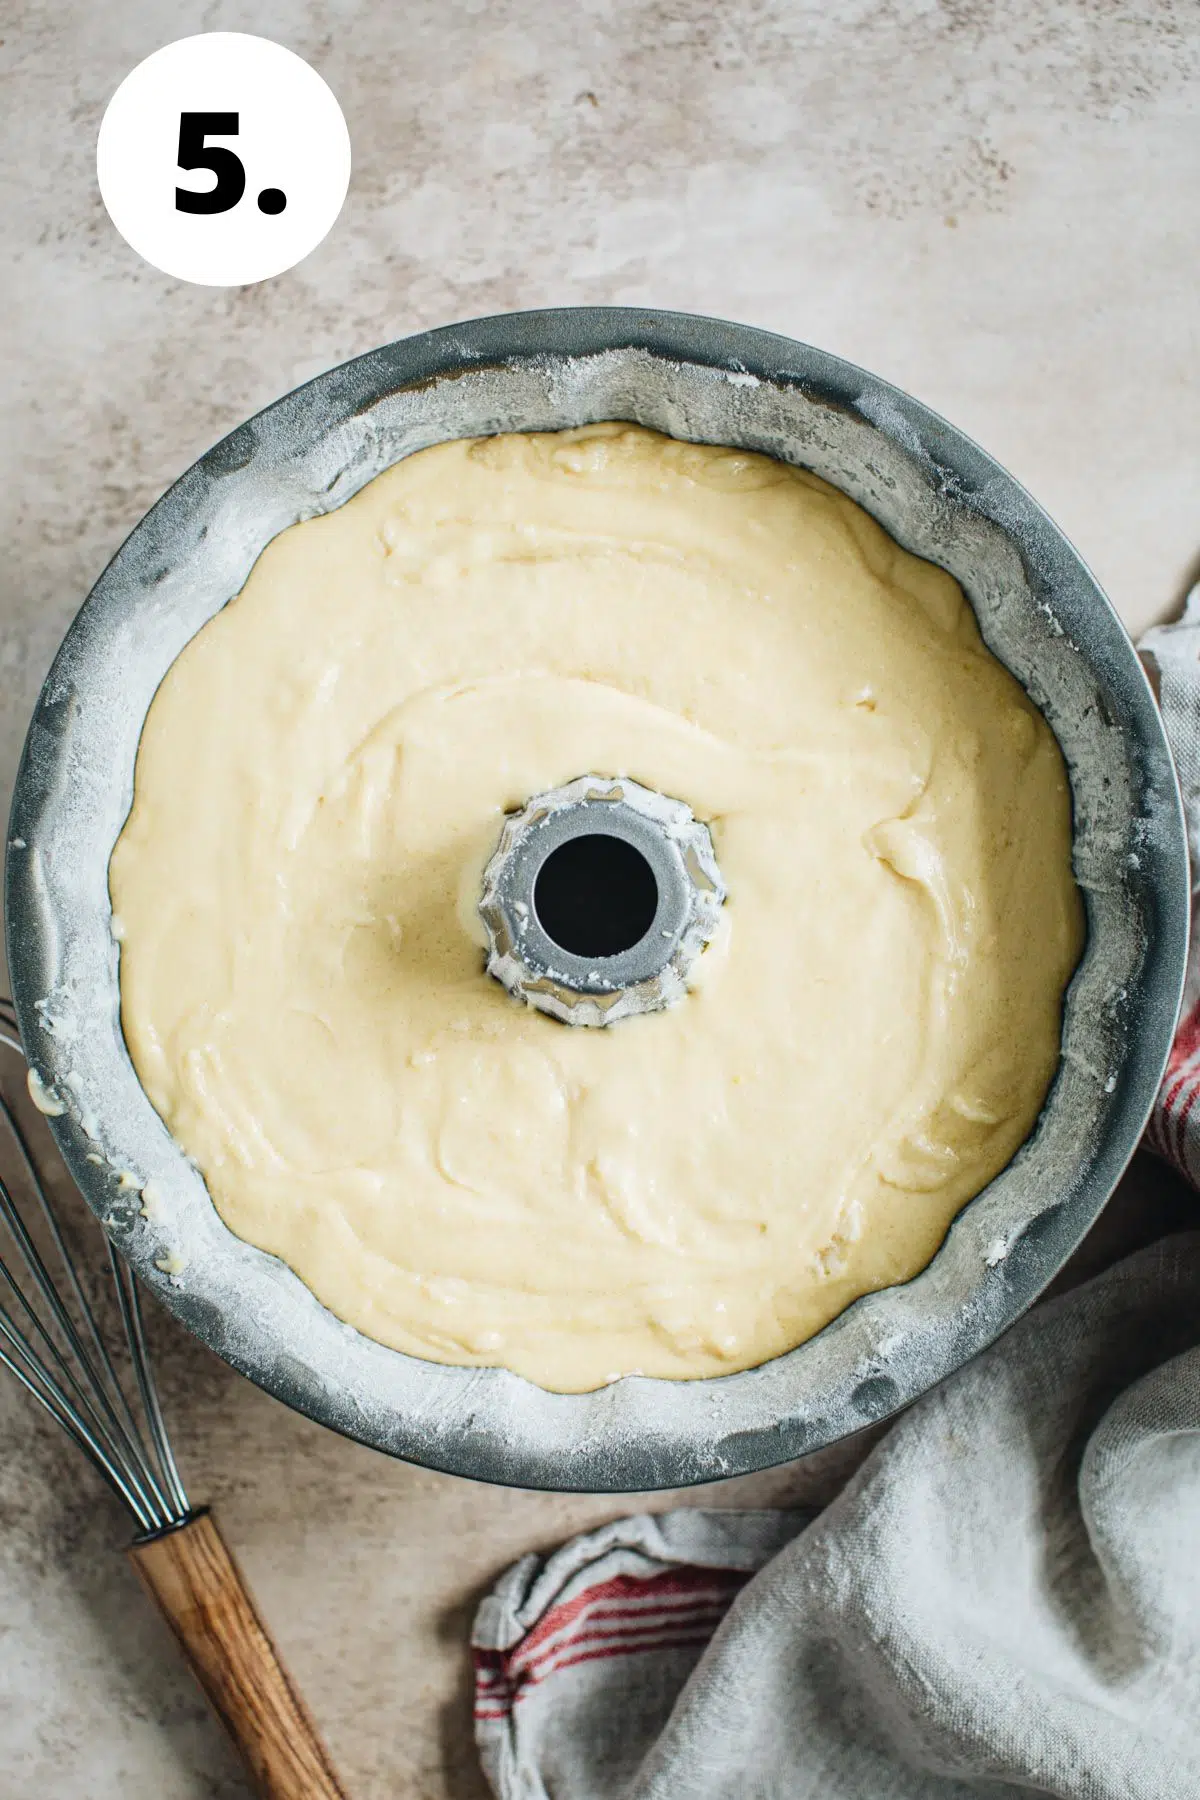 Sour cream pound cake process step 5.